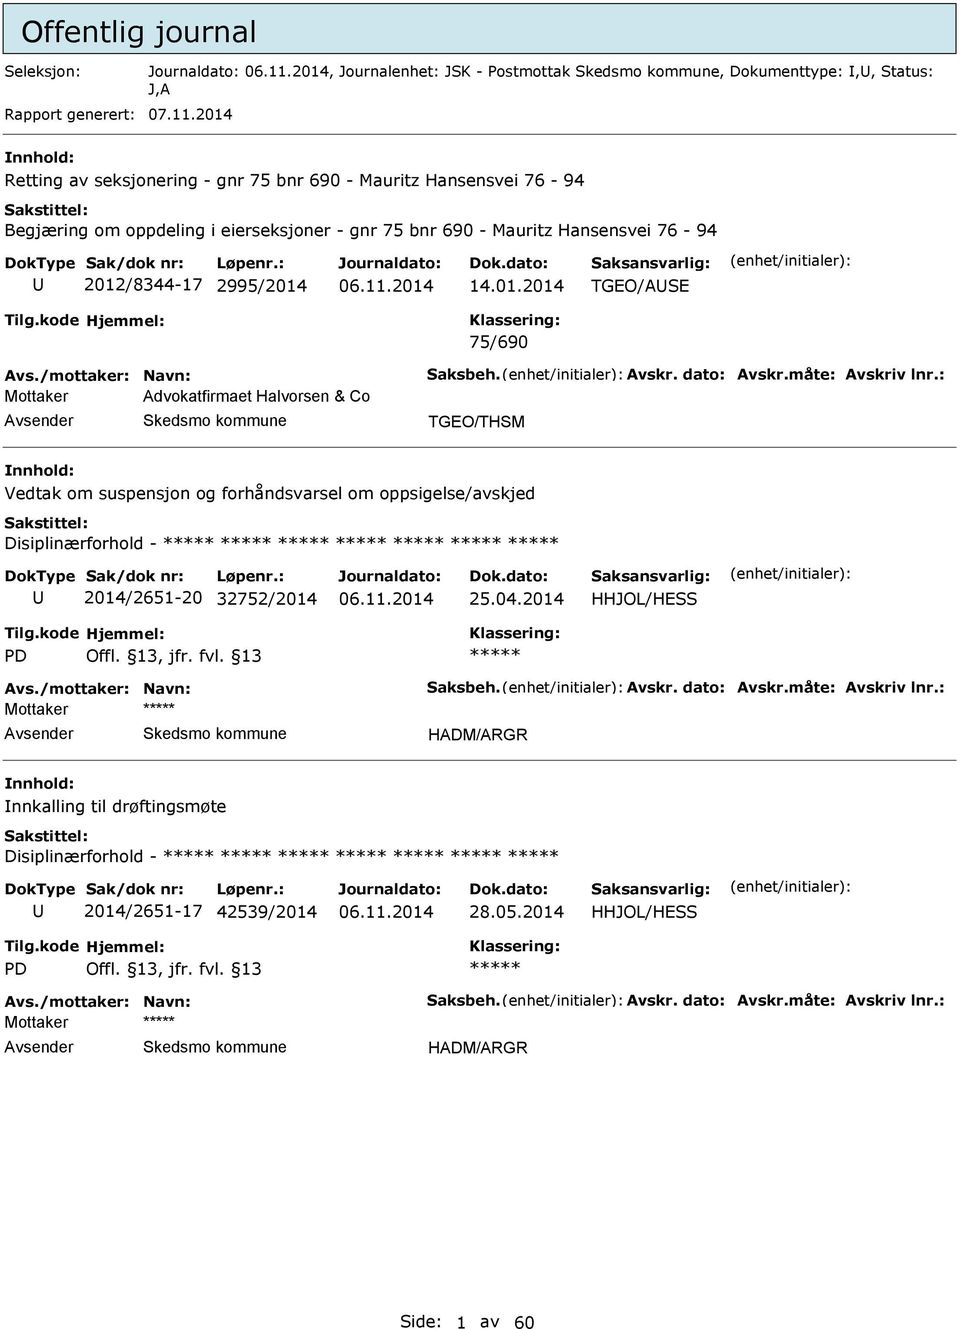 2012/8344-17 2995/2014 14.01.2014 TGEO/SE 75/690 Mottaker dvokatfirmaet Halvorsen & Co TGEO/THSM Vedtak om suspensjon og forhåndsvarsel om oppsigelse/avskjed